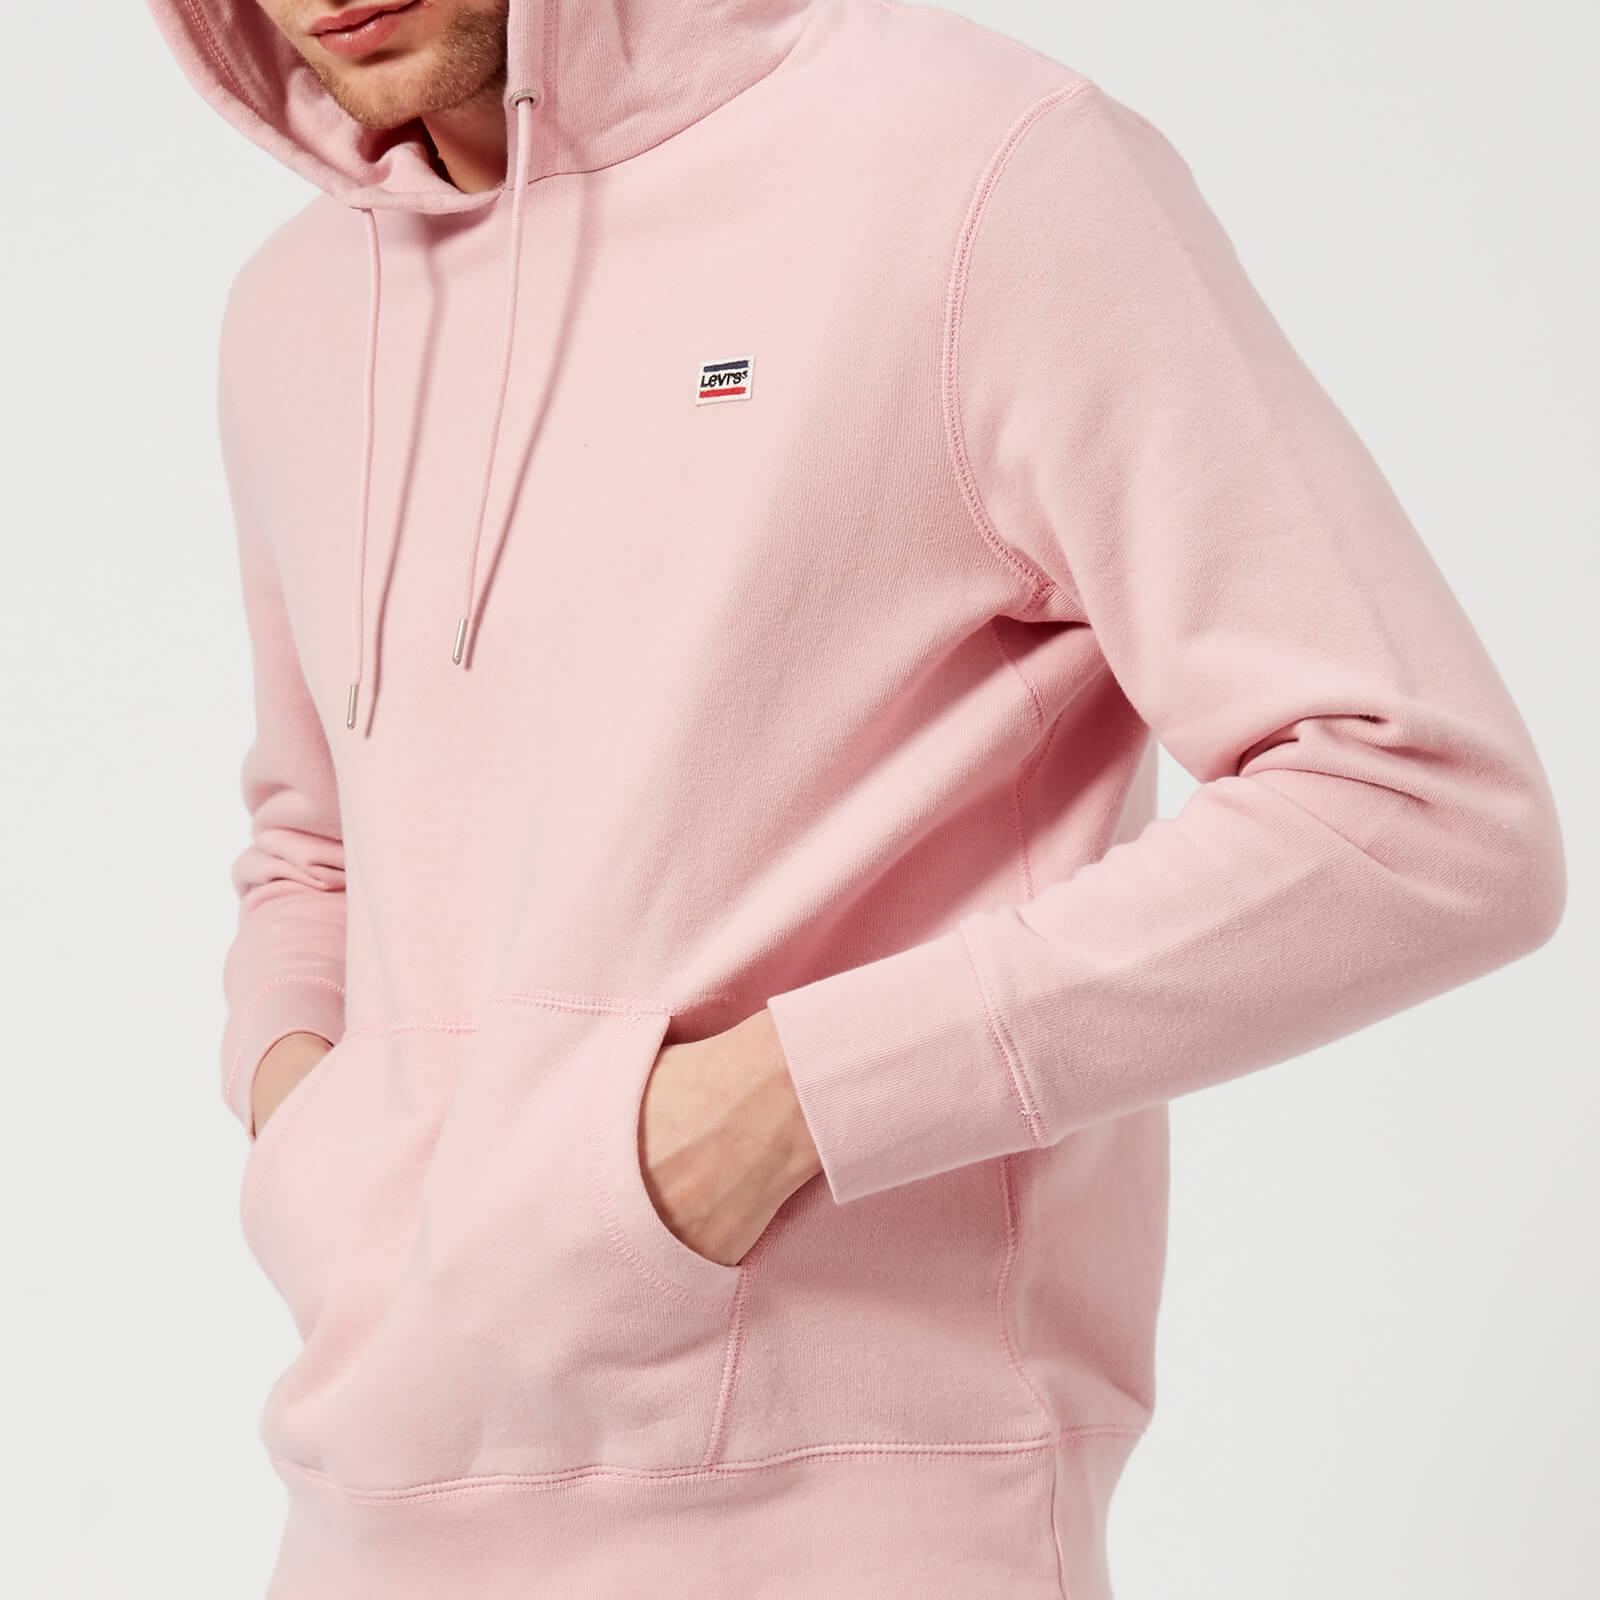 levis pink sweatshirt